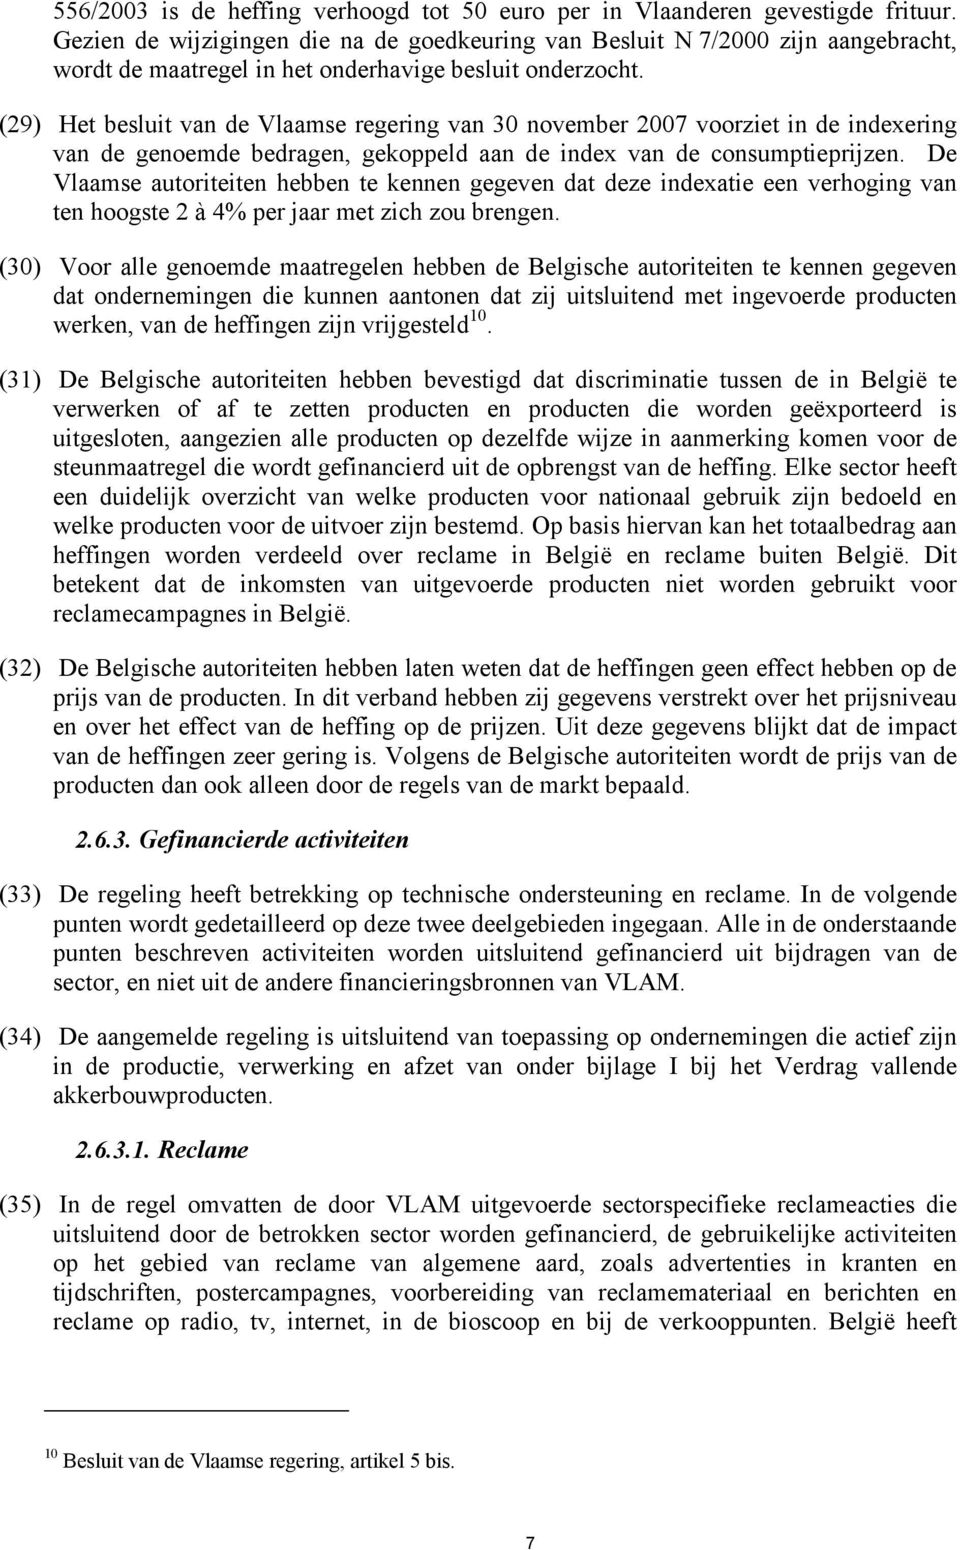 (29) Het besluit van de Vlaamse regering van 30 november 2007 voorziet in de indexering van de genoemde bedragen, gekoppeld aan de index van de consumptieprijzen.